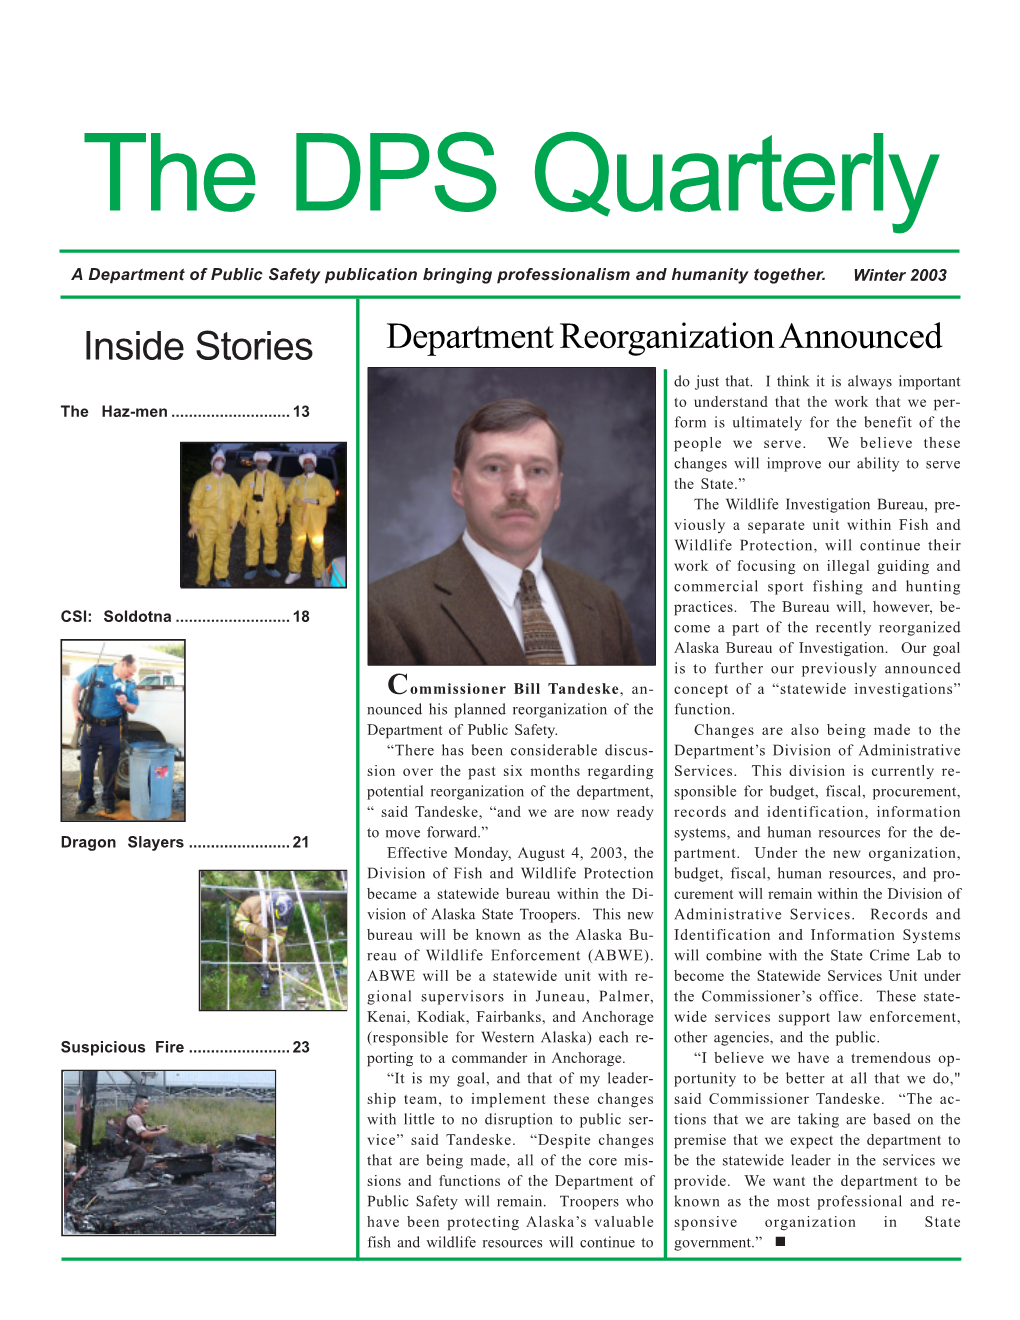 THE DPS QUARTERLY the DPS Quarterly